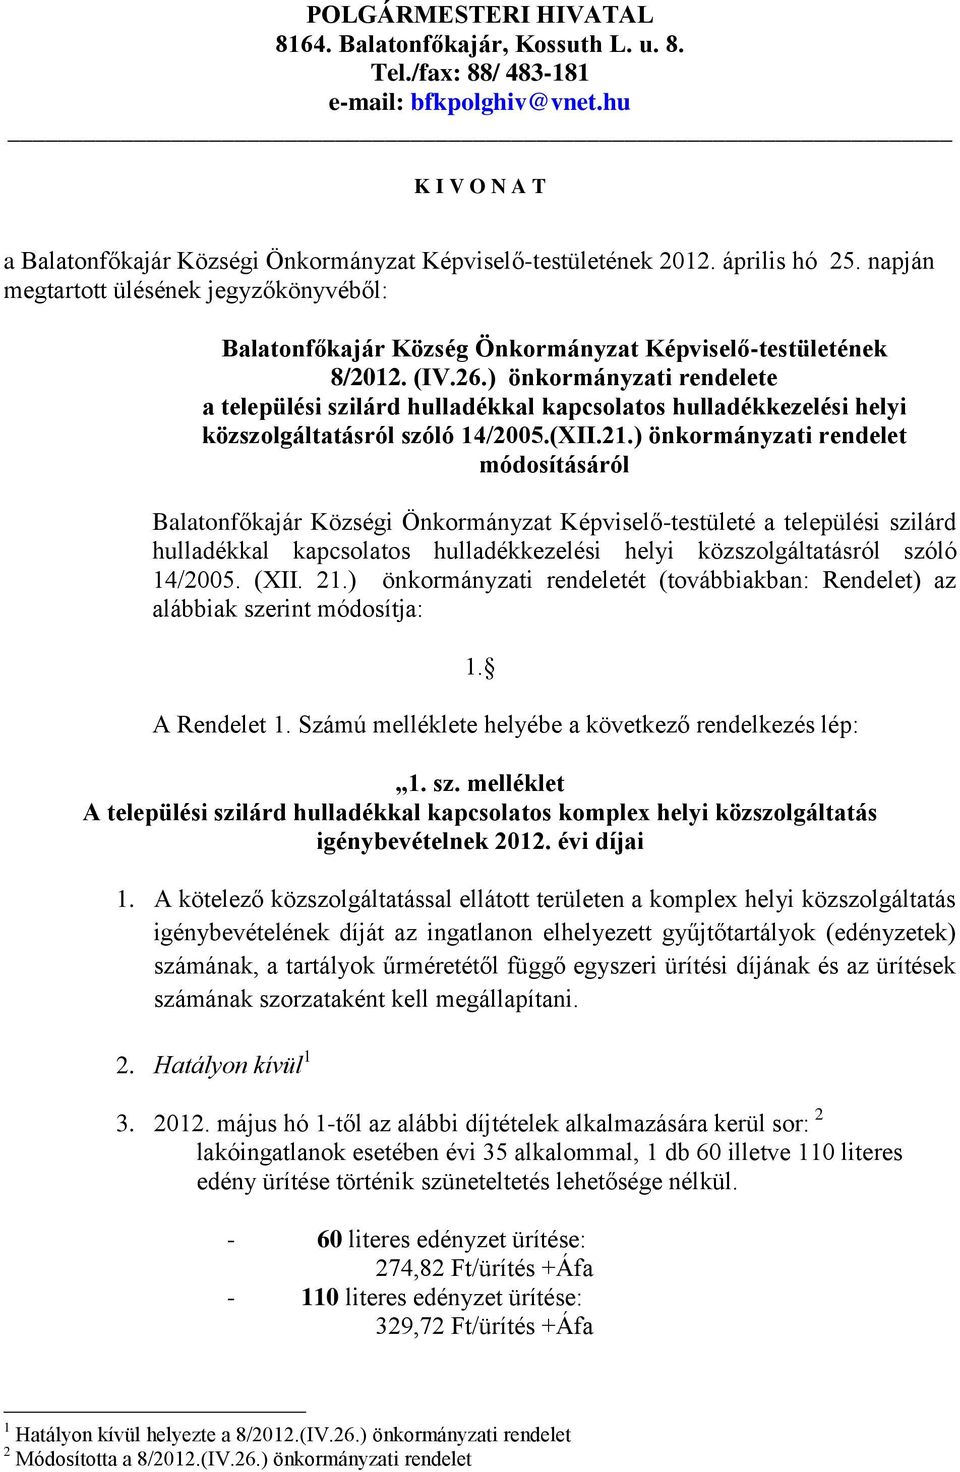 ) önkormányzati rendelet módosításáról Balatonfőkajár Községi Önkormányzat Képviselő-testületé a települési szilárd hulladékkal kapcsolatos hulladékkezelési helyi közszolgáltatásról szóló 14/2005.